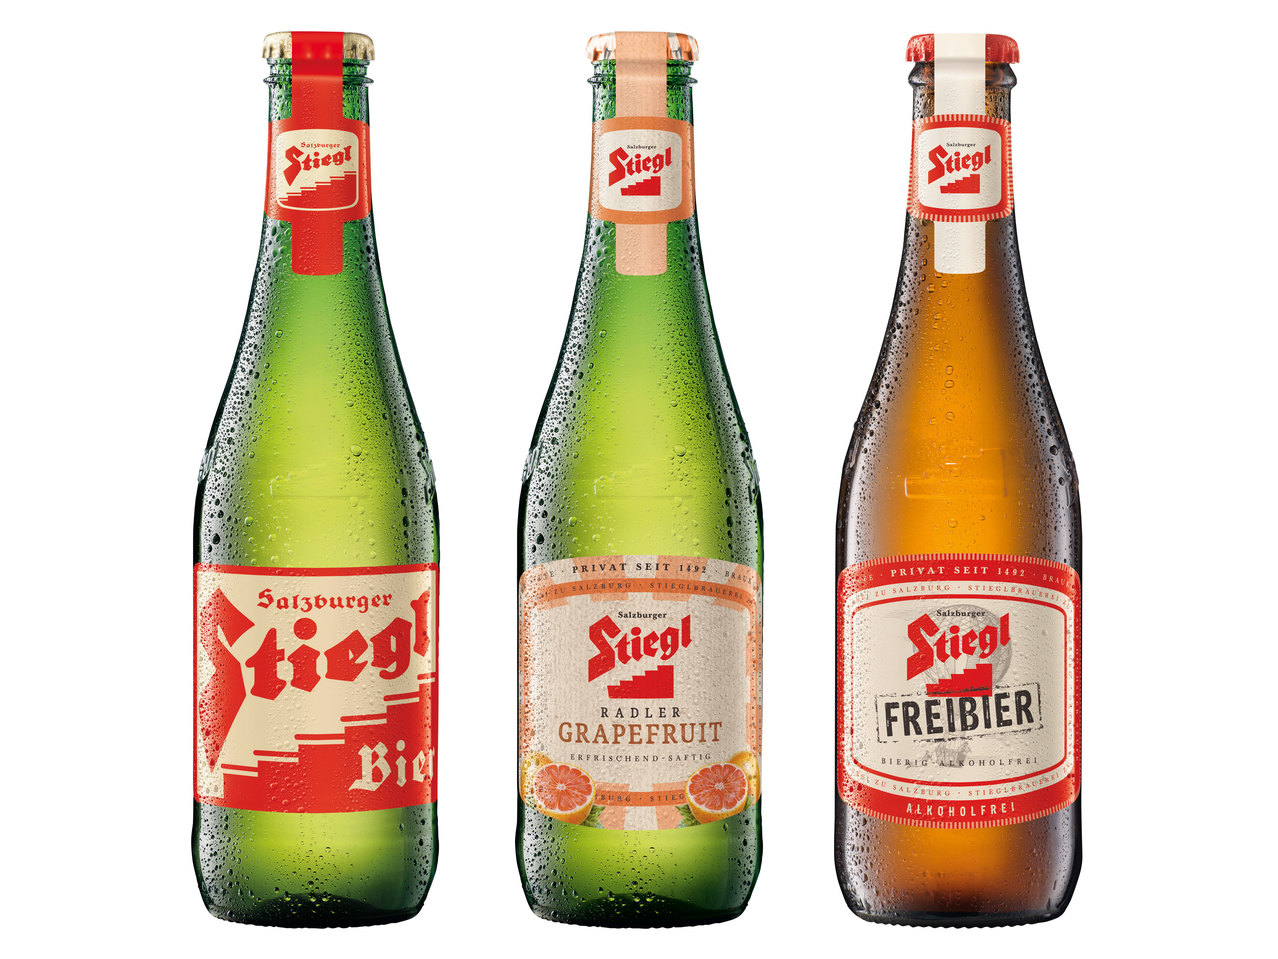 STIEGL Bier/Radler